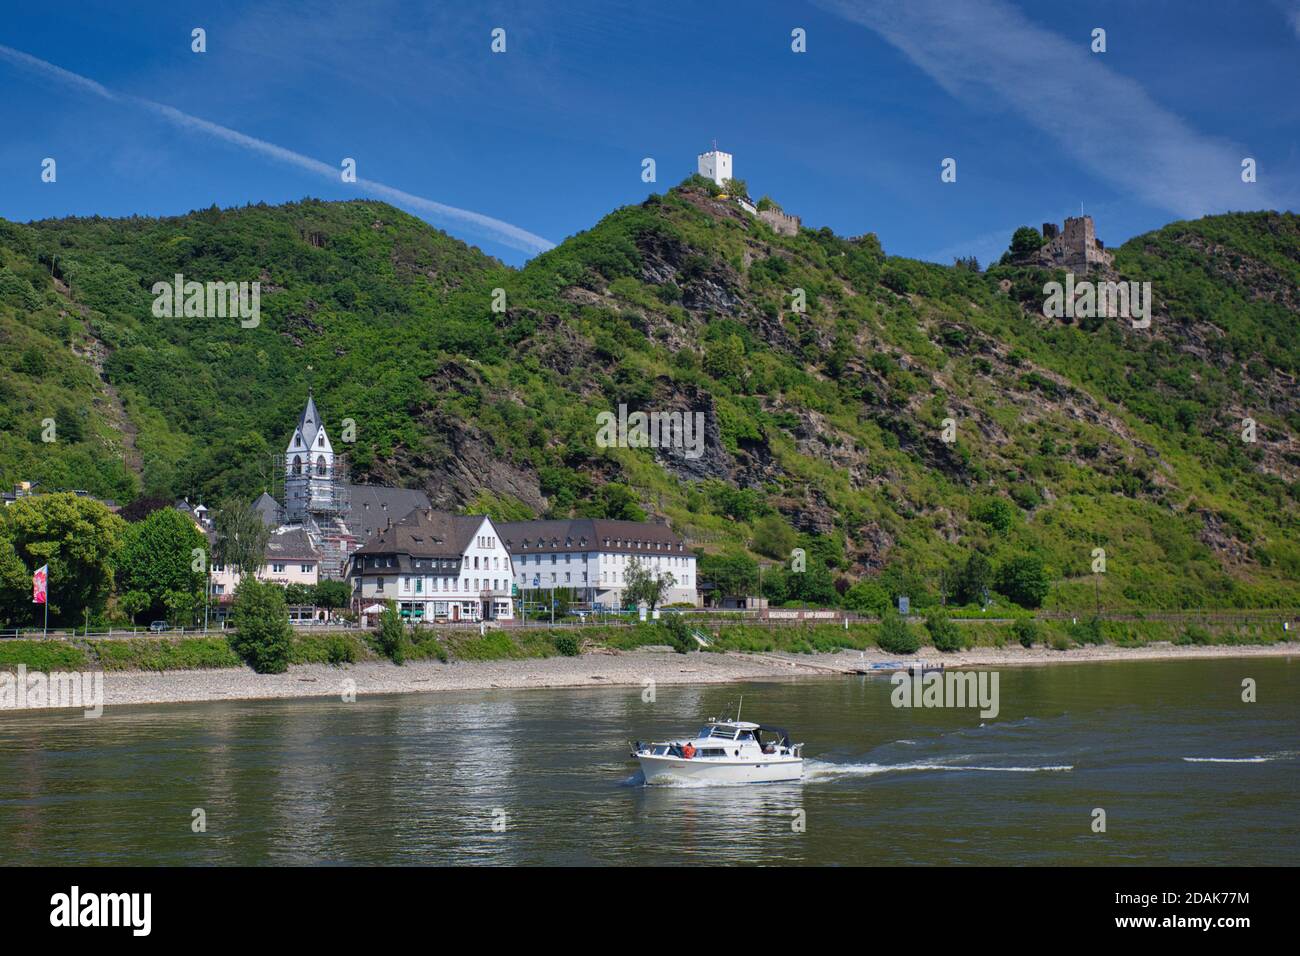 Eine Stadt am Rhein mit einem Schloss auf dem Hügel dahinter & kleines Motorboot im Vordergrund, gegen einen blauen Himmel. Der Rhein, Deutschland Stockfoto